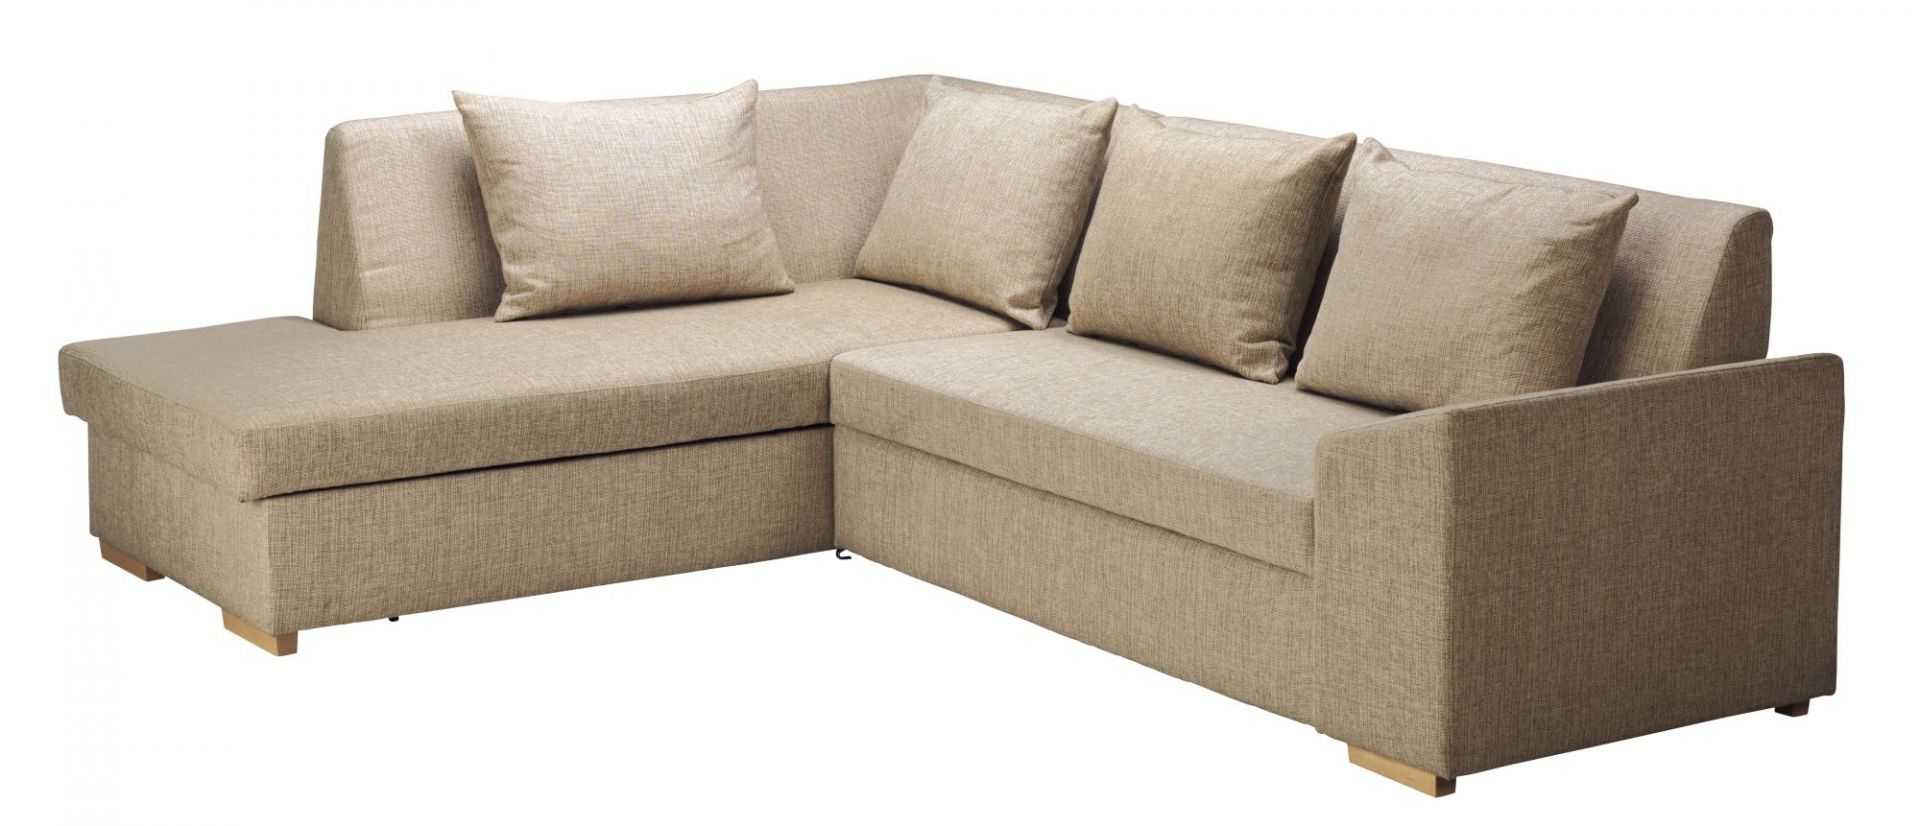 SLAGARP IKEA to rozkładana sofa narożna z pojemnikiem, dostępne opcje: prawa/lewa. Wymiary: 257x200x60x 80 cm. SUGEROWANA CENA DETALICZNA: 1.999 zł Fot. IKEA